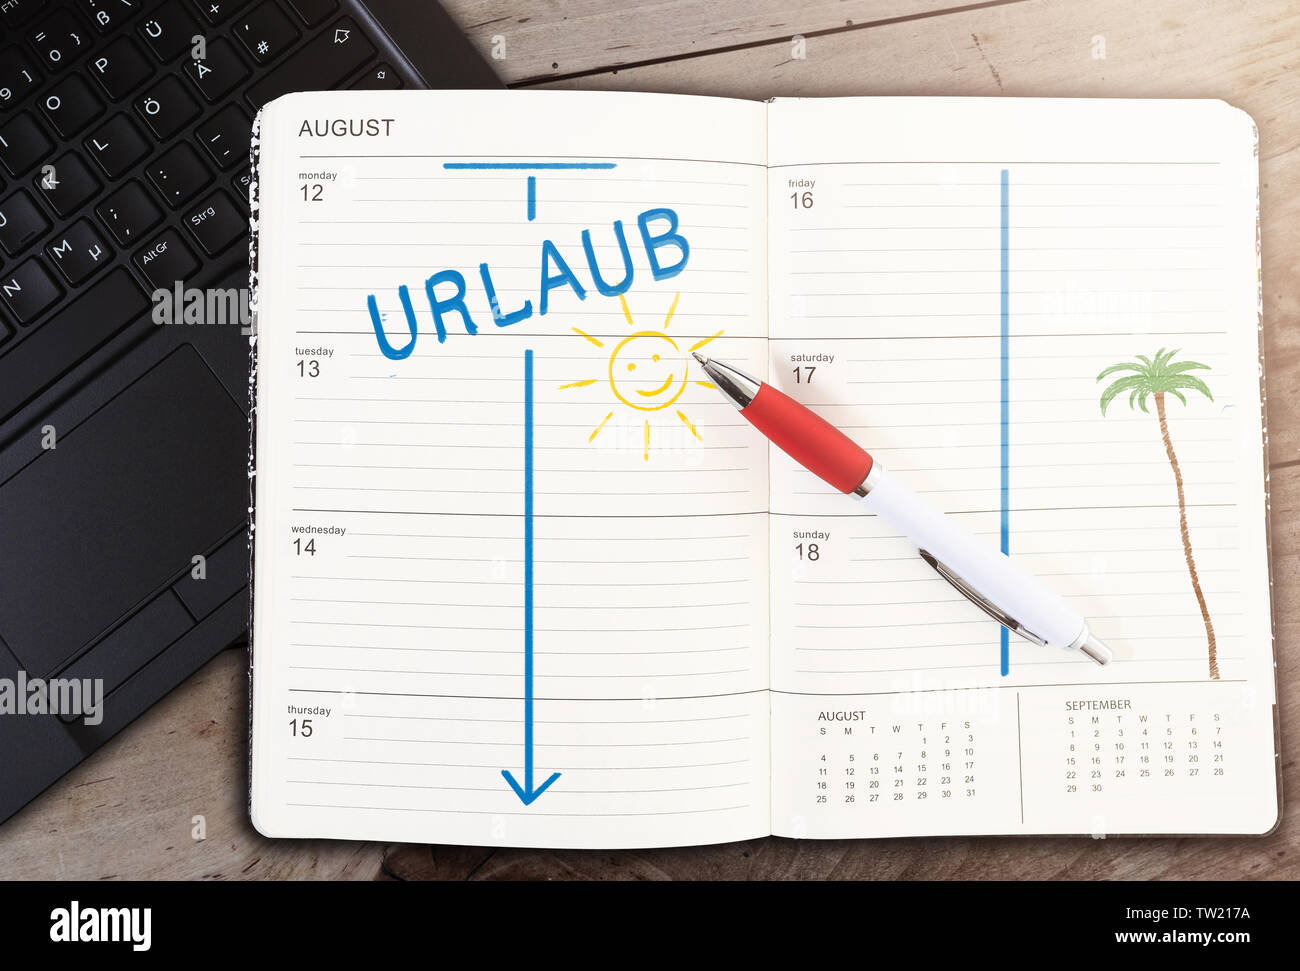 Vue de dessus du calendrier sur table avec URLAUB, mot allemand pour des vacances, et l'icône soleil contre table en bois Banque D'Images